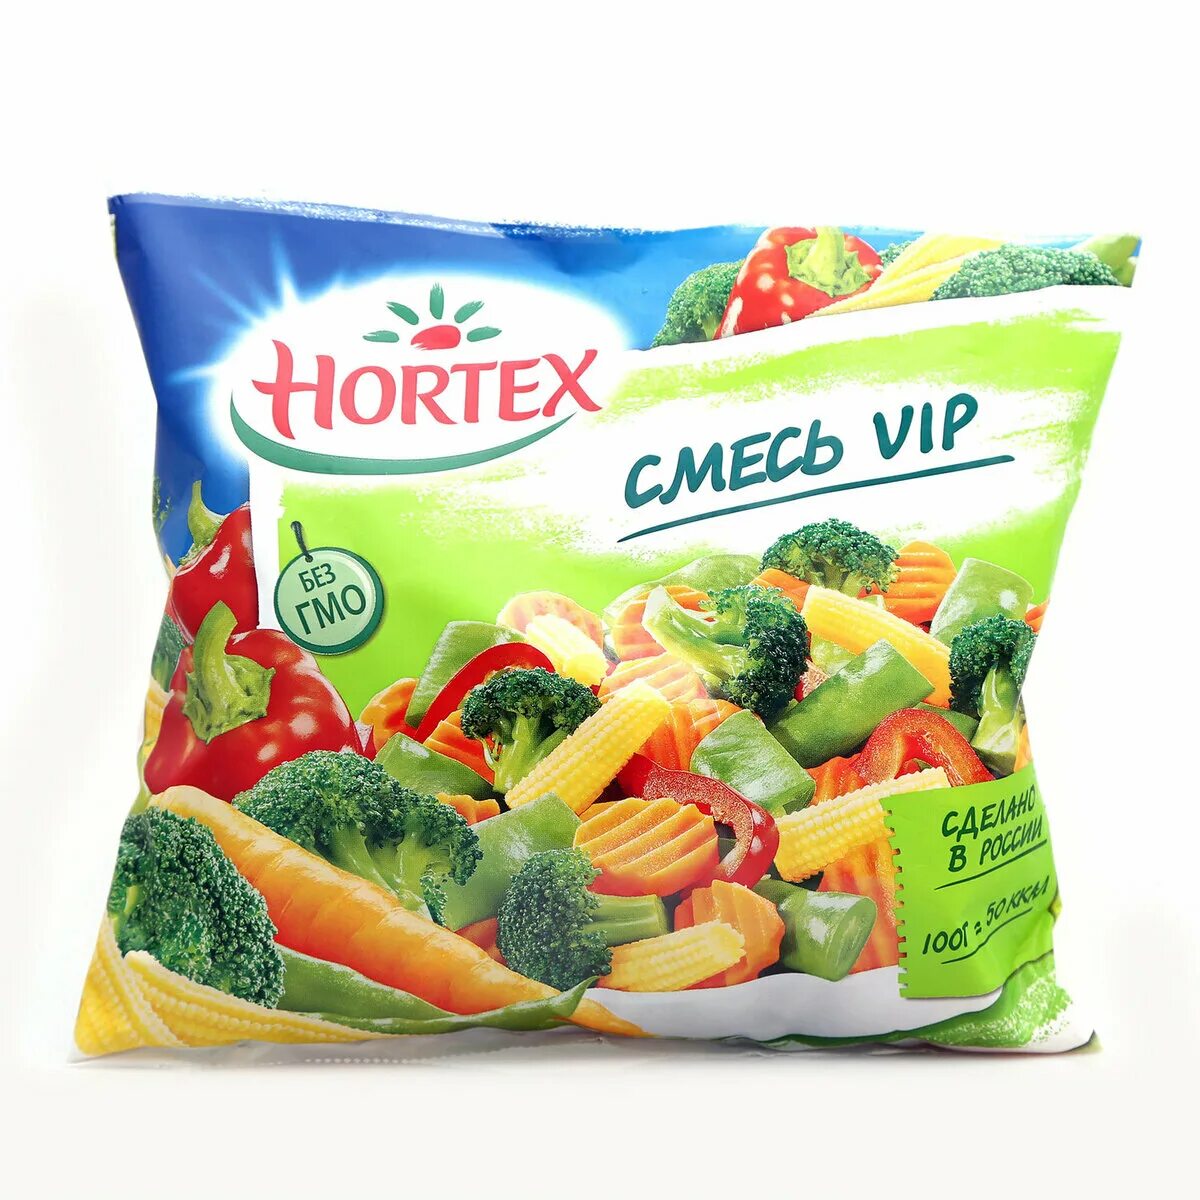 Замороженные овощи в упаковке. Хортекс смесь вип. "Hortex" смесь "VIP" 400 Г.. Смесь овощная Хортекс вип. Овощная смесь Hortex VIP быстрозамороженная 400 г.